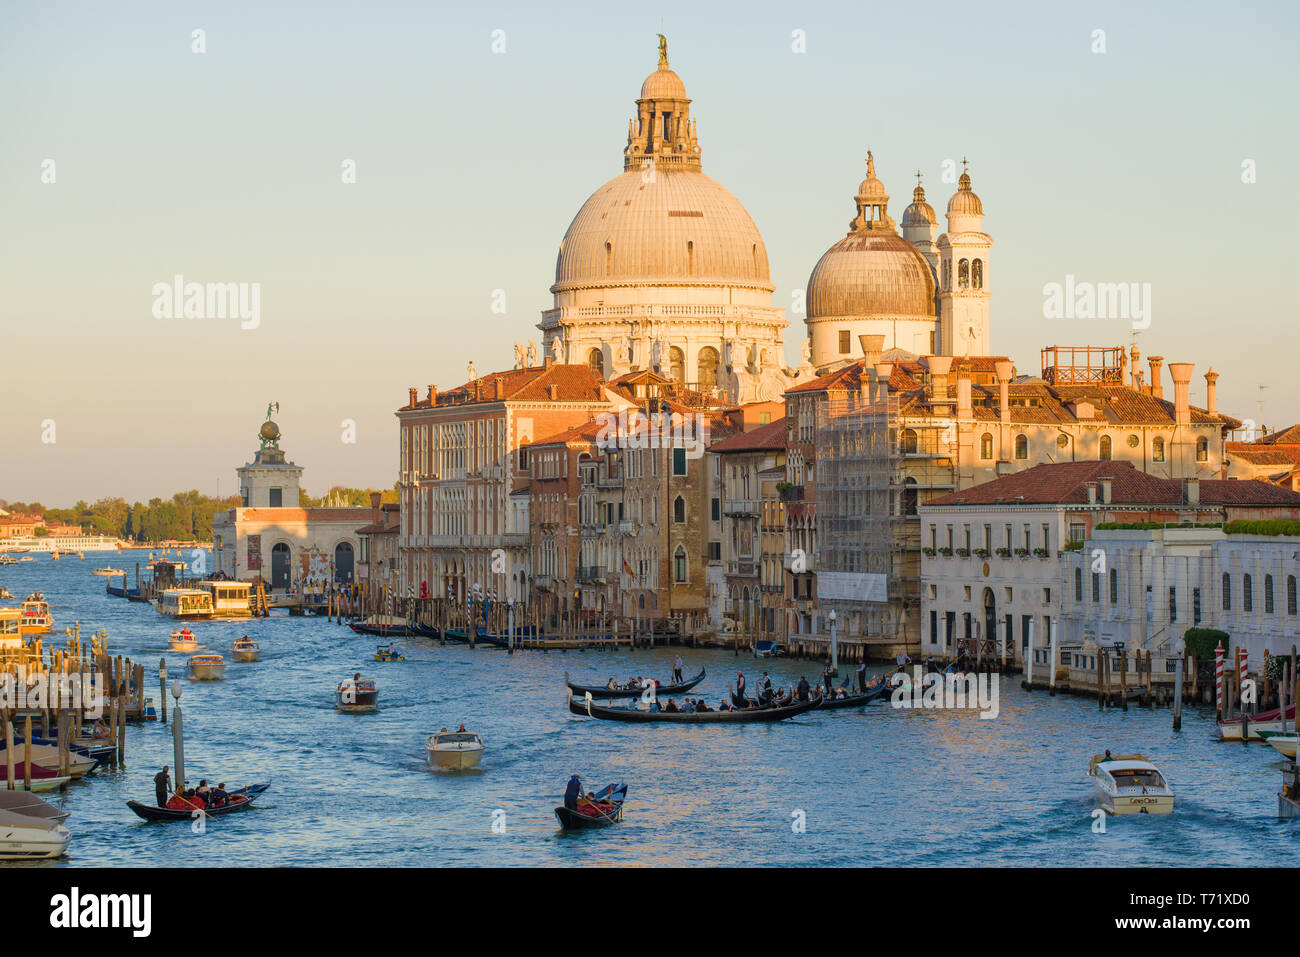 View of the dome of the Basilica di Santa Maria della Salute on a sunny September evening. Venice Stock Photo